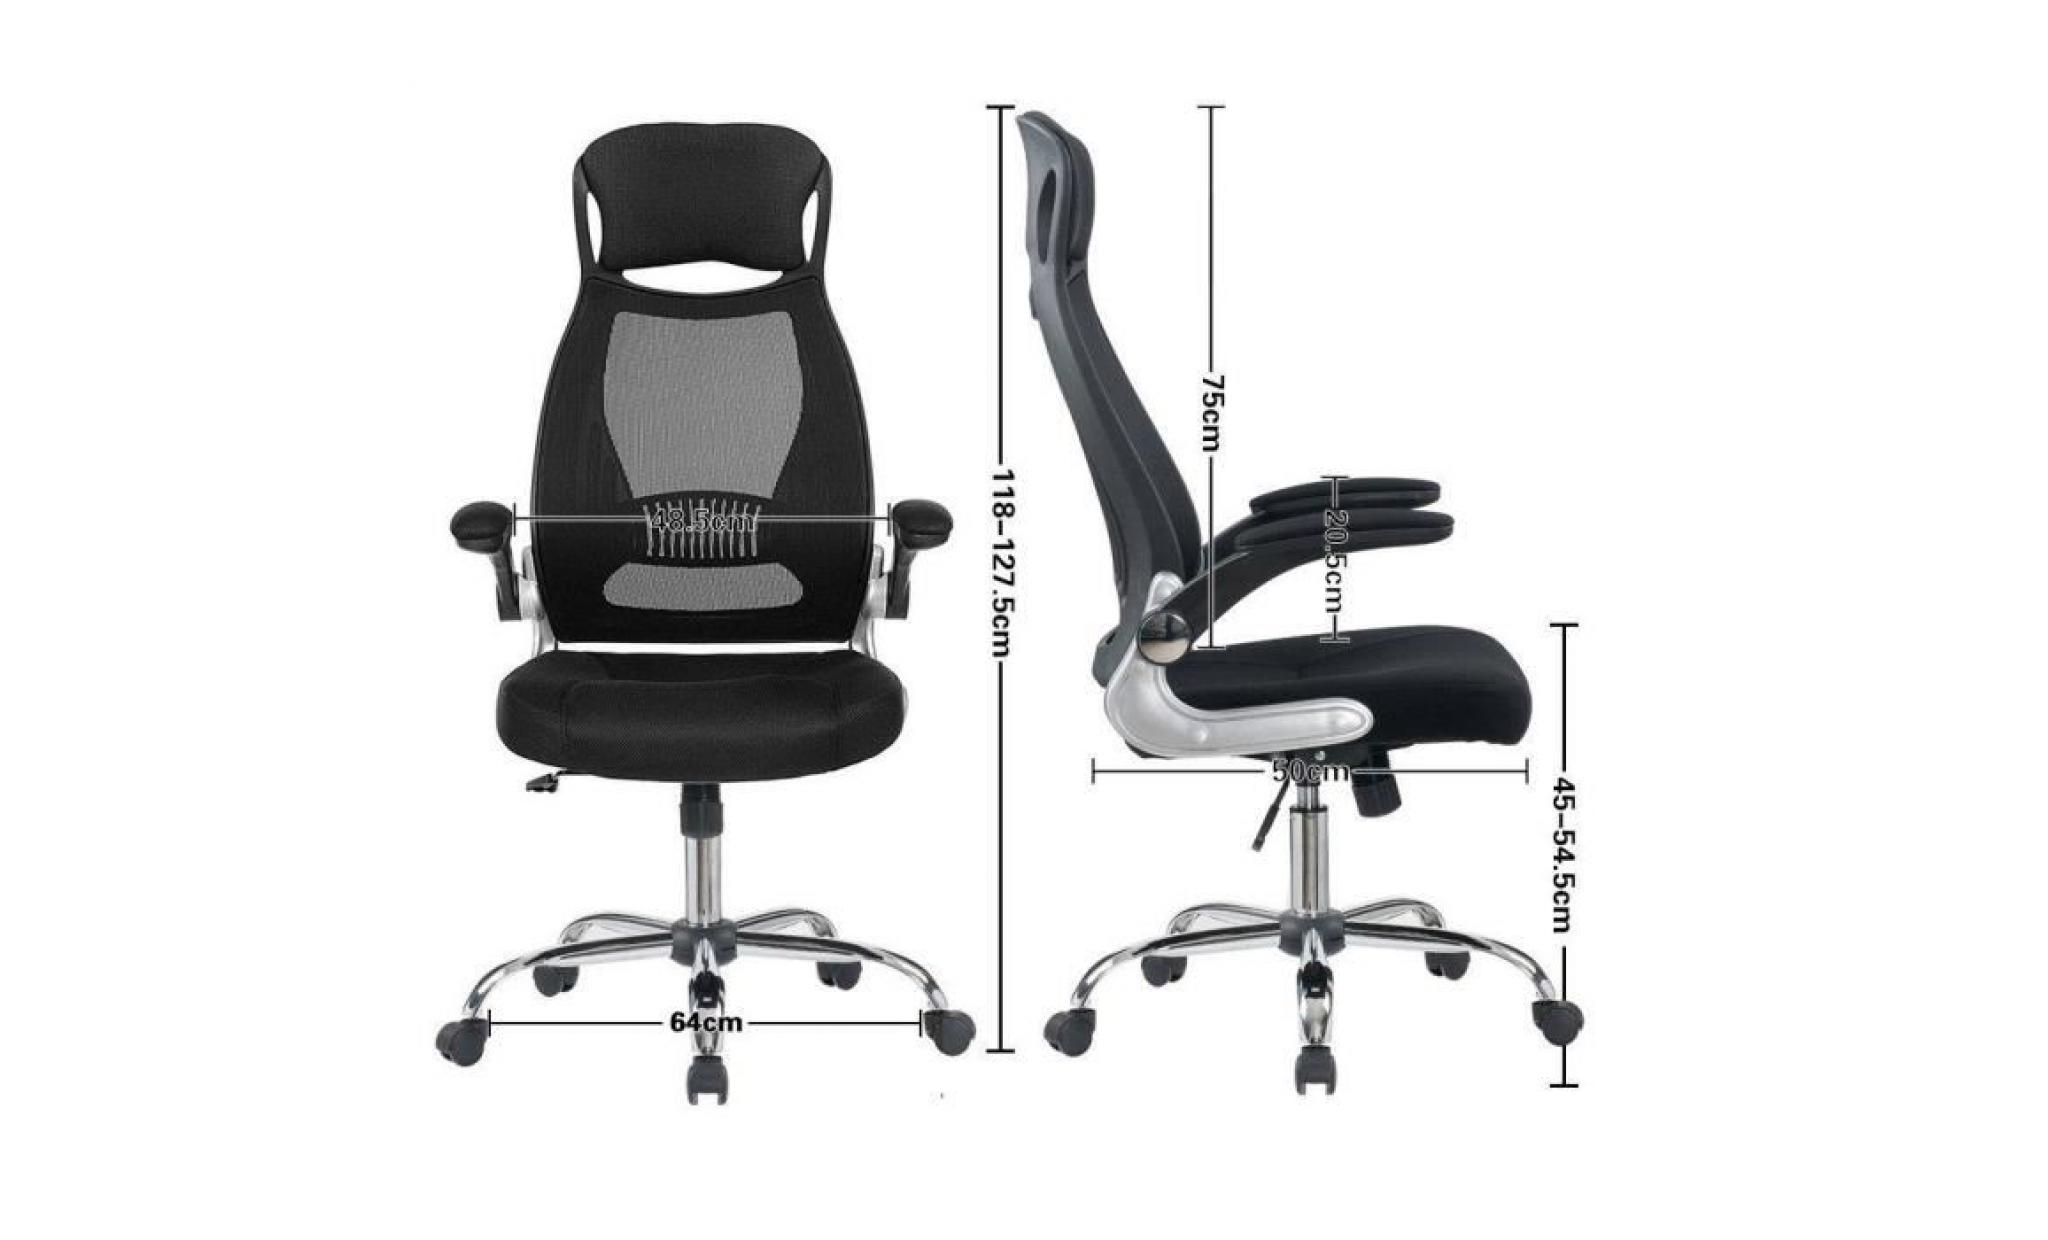 fauteuil de bureau   hauteur réglable   siège ergonomique   noir   intimate wm heart pas cher